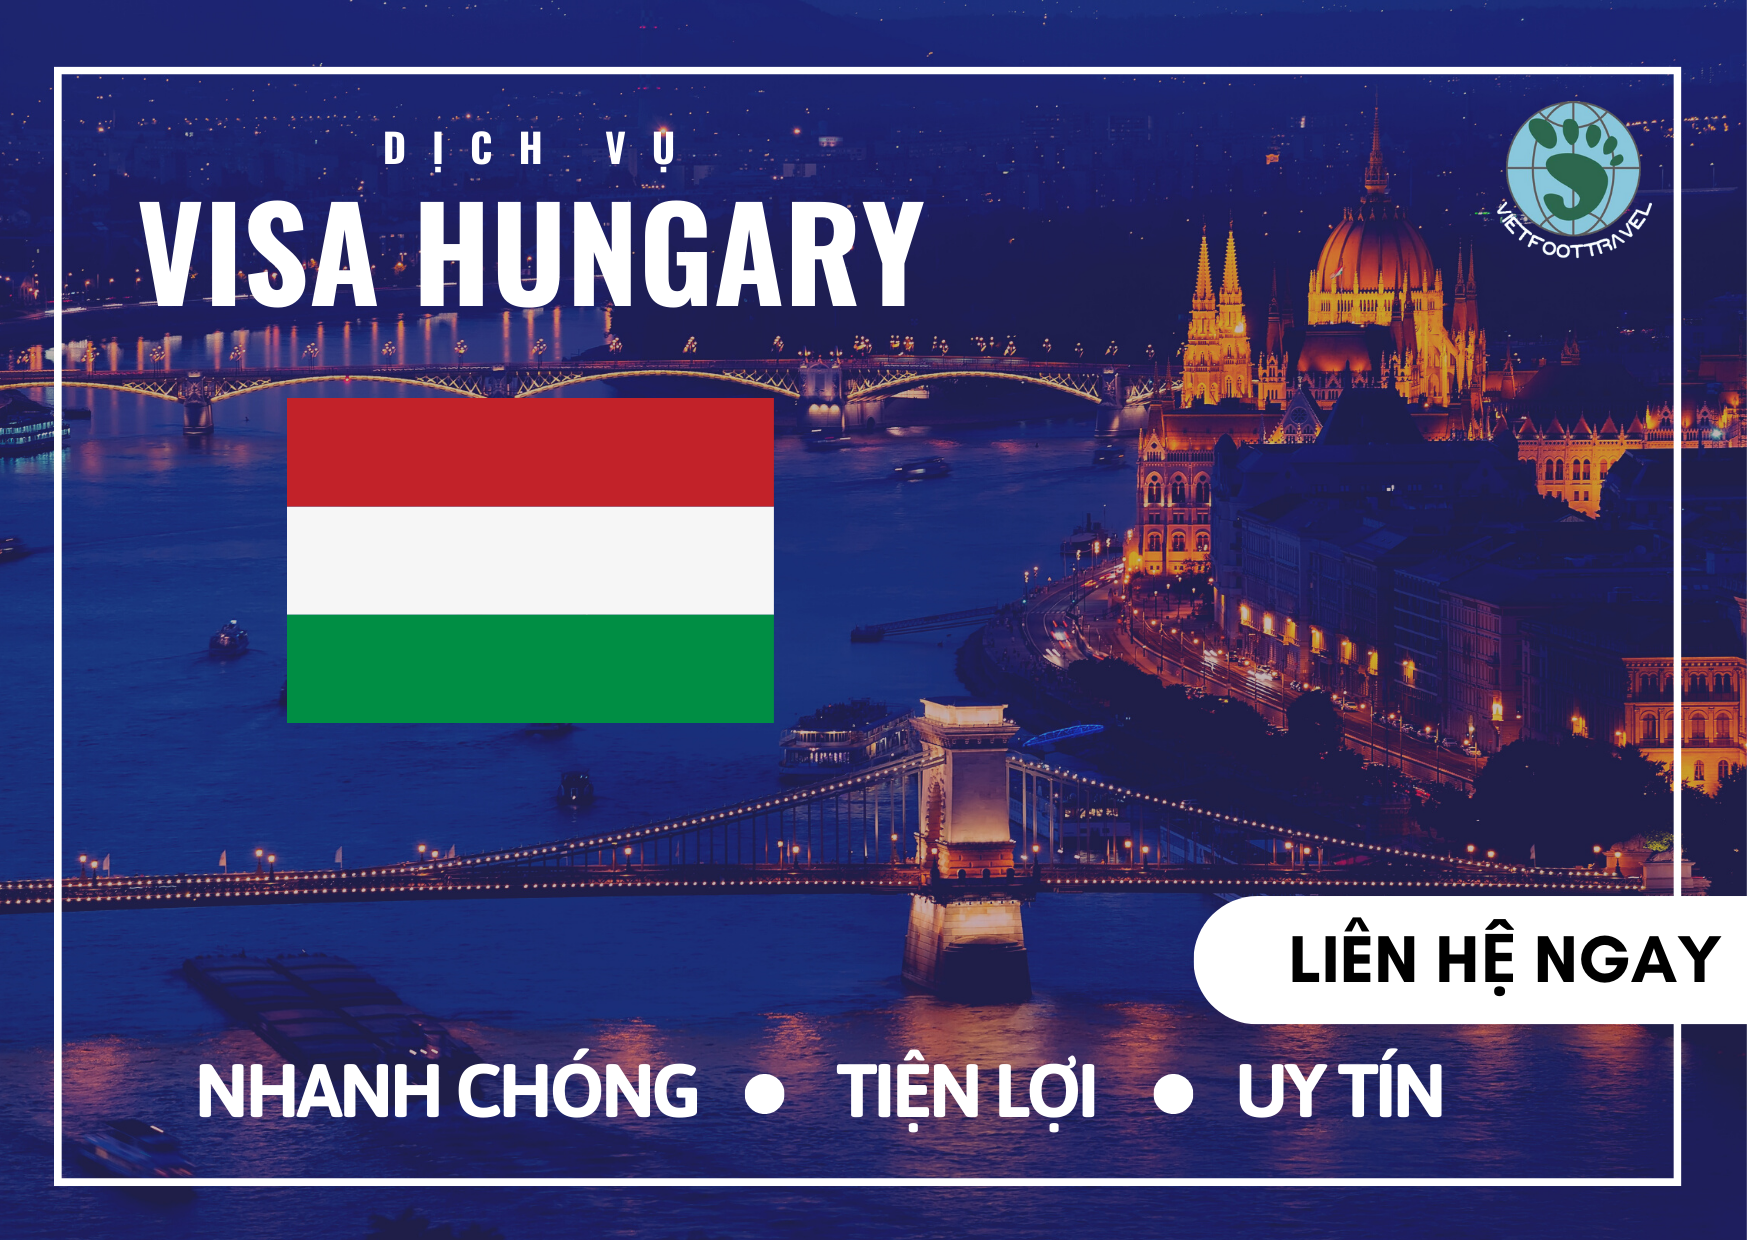 HỒ SƠ VÀ THỦ TỤC VISA HUNGARY